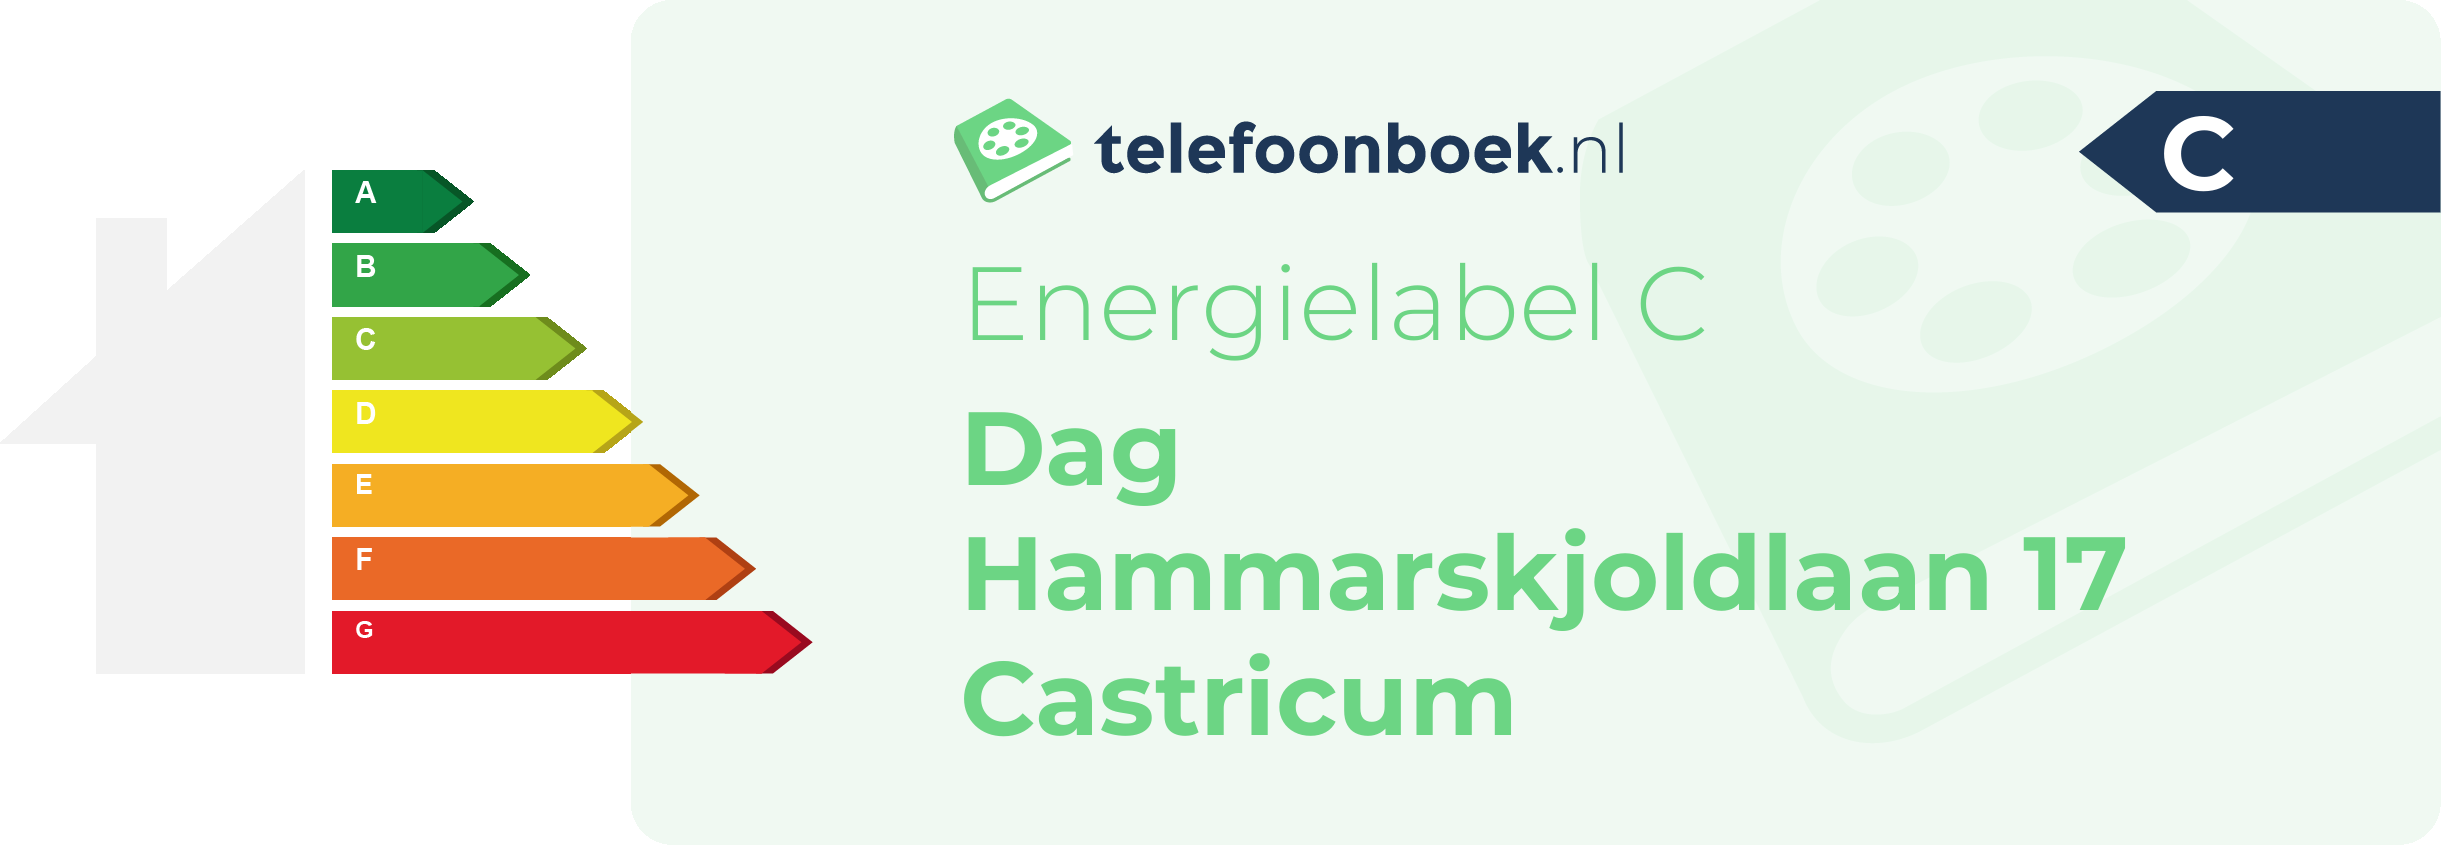 Energielabel Dag Hammarskjoldlaan 17 Castricum